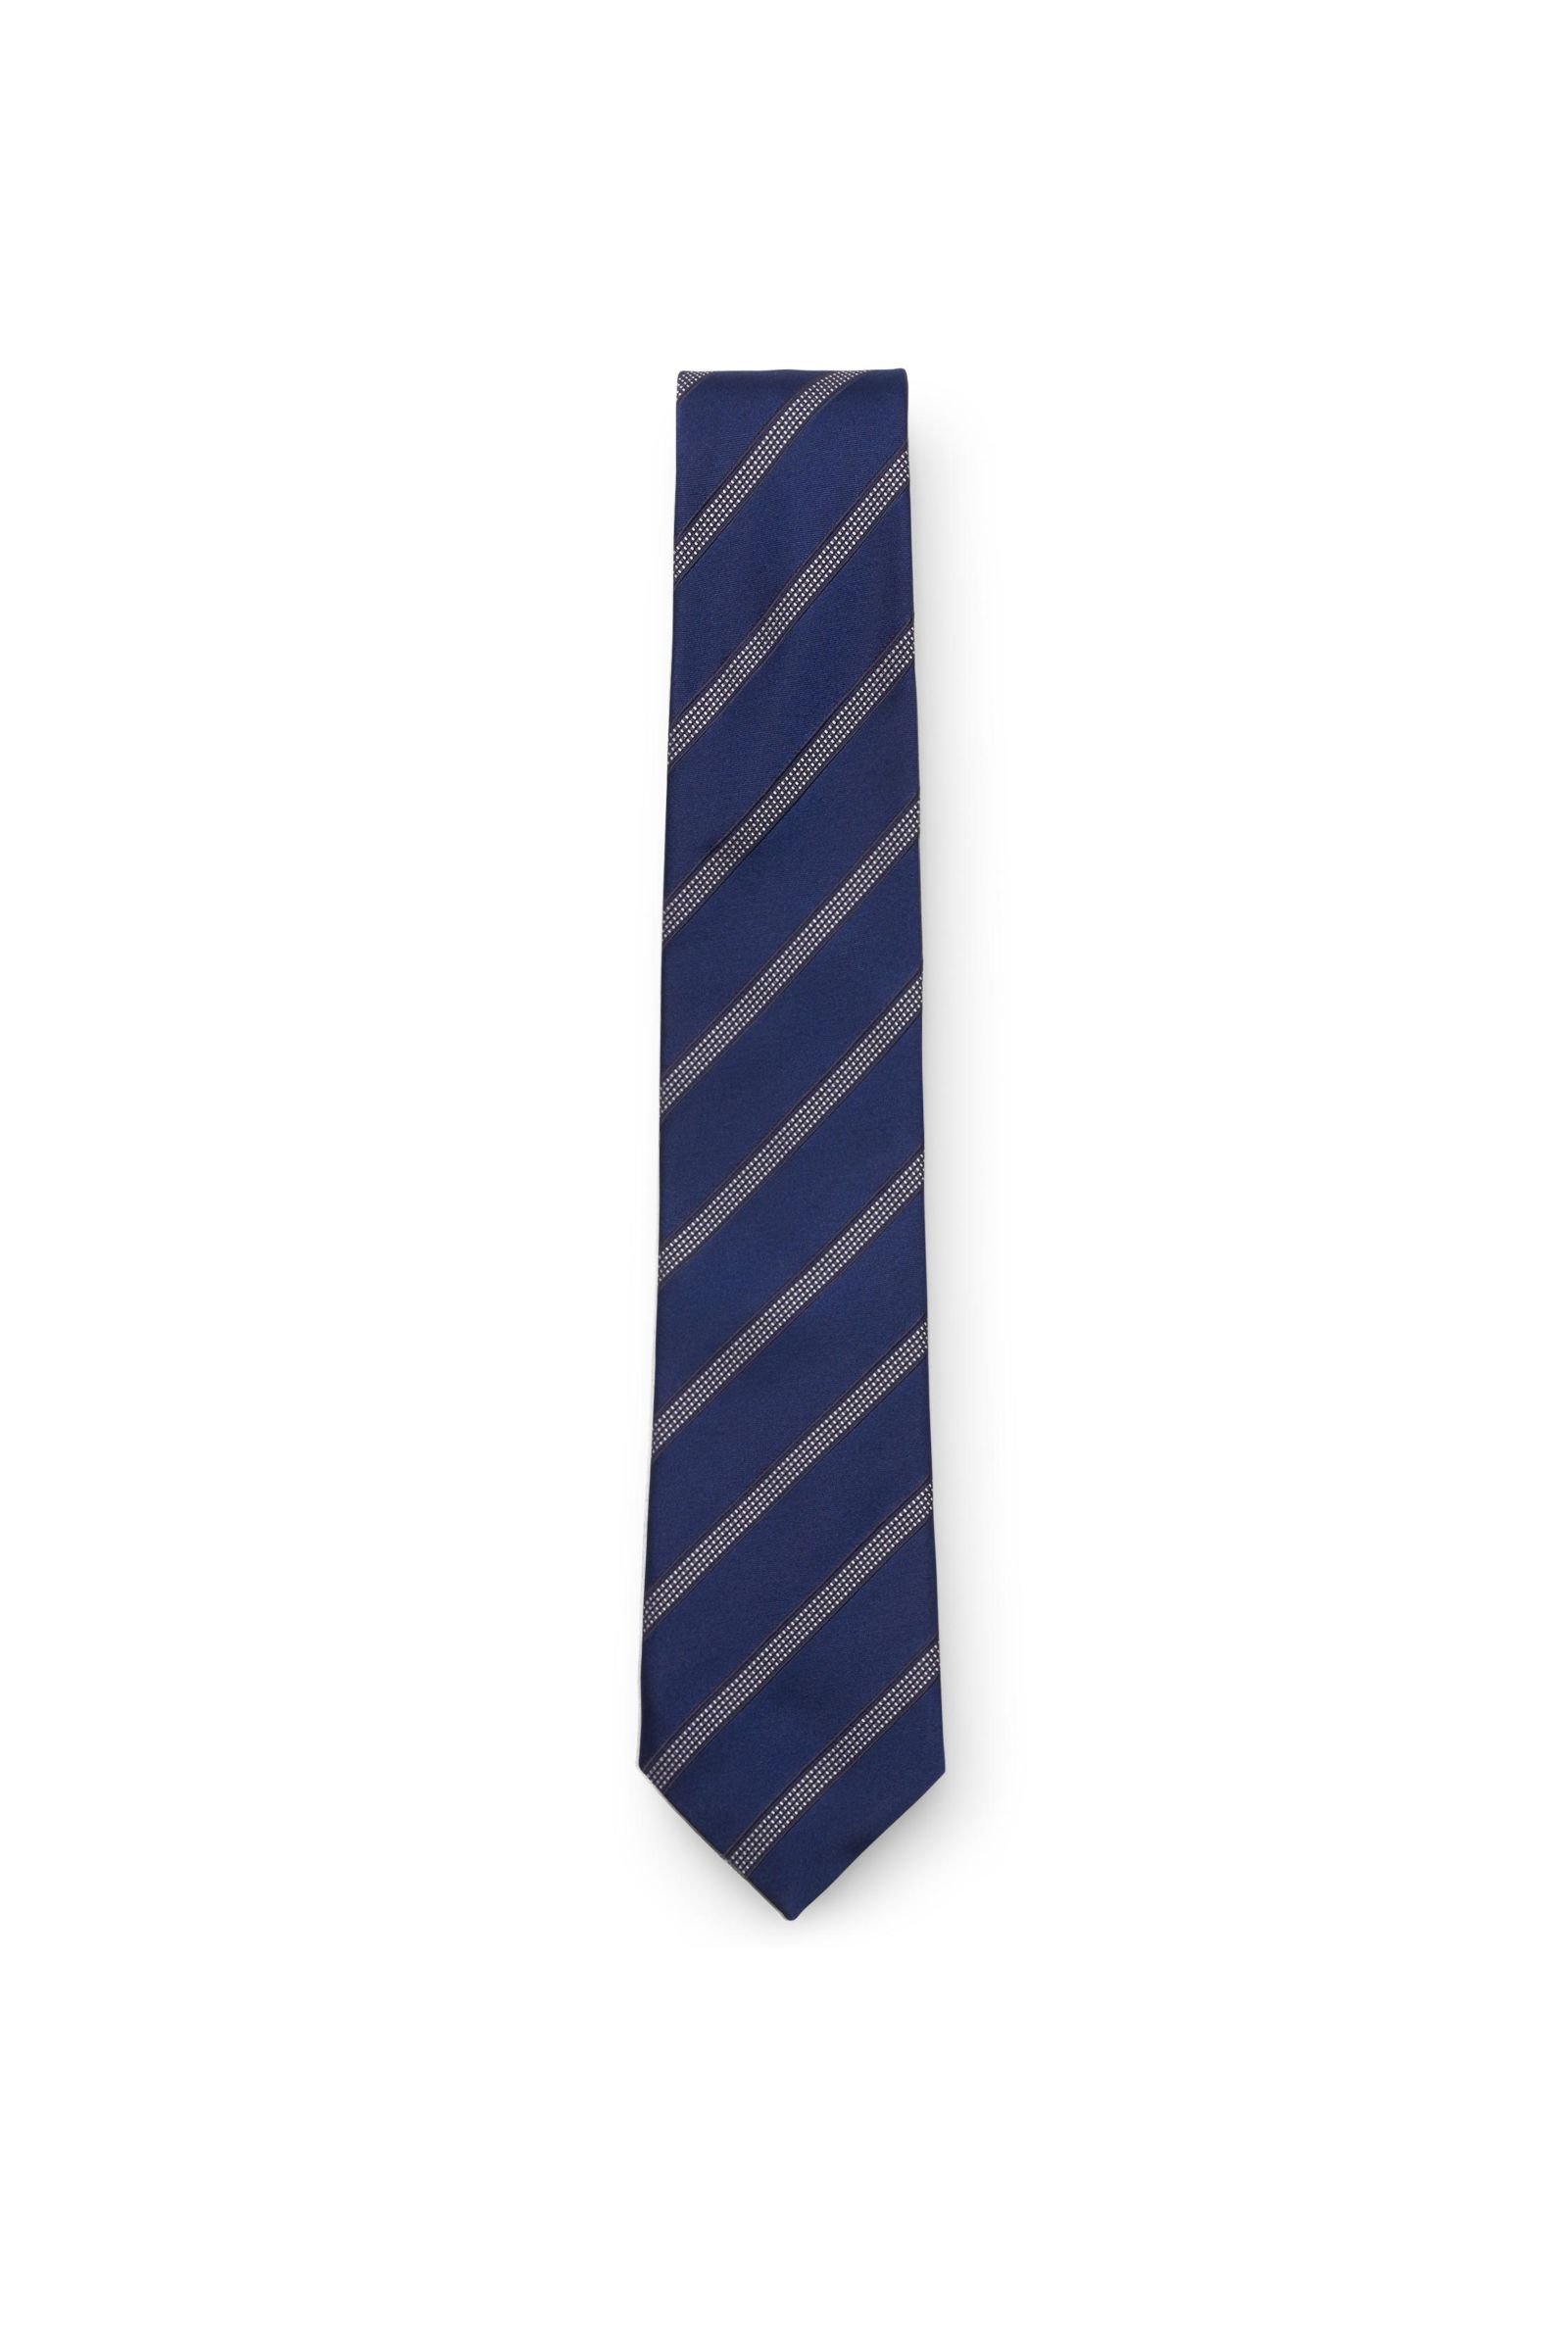 Silk tie navy striped